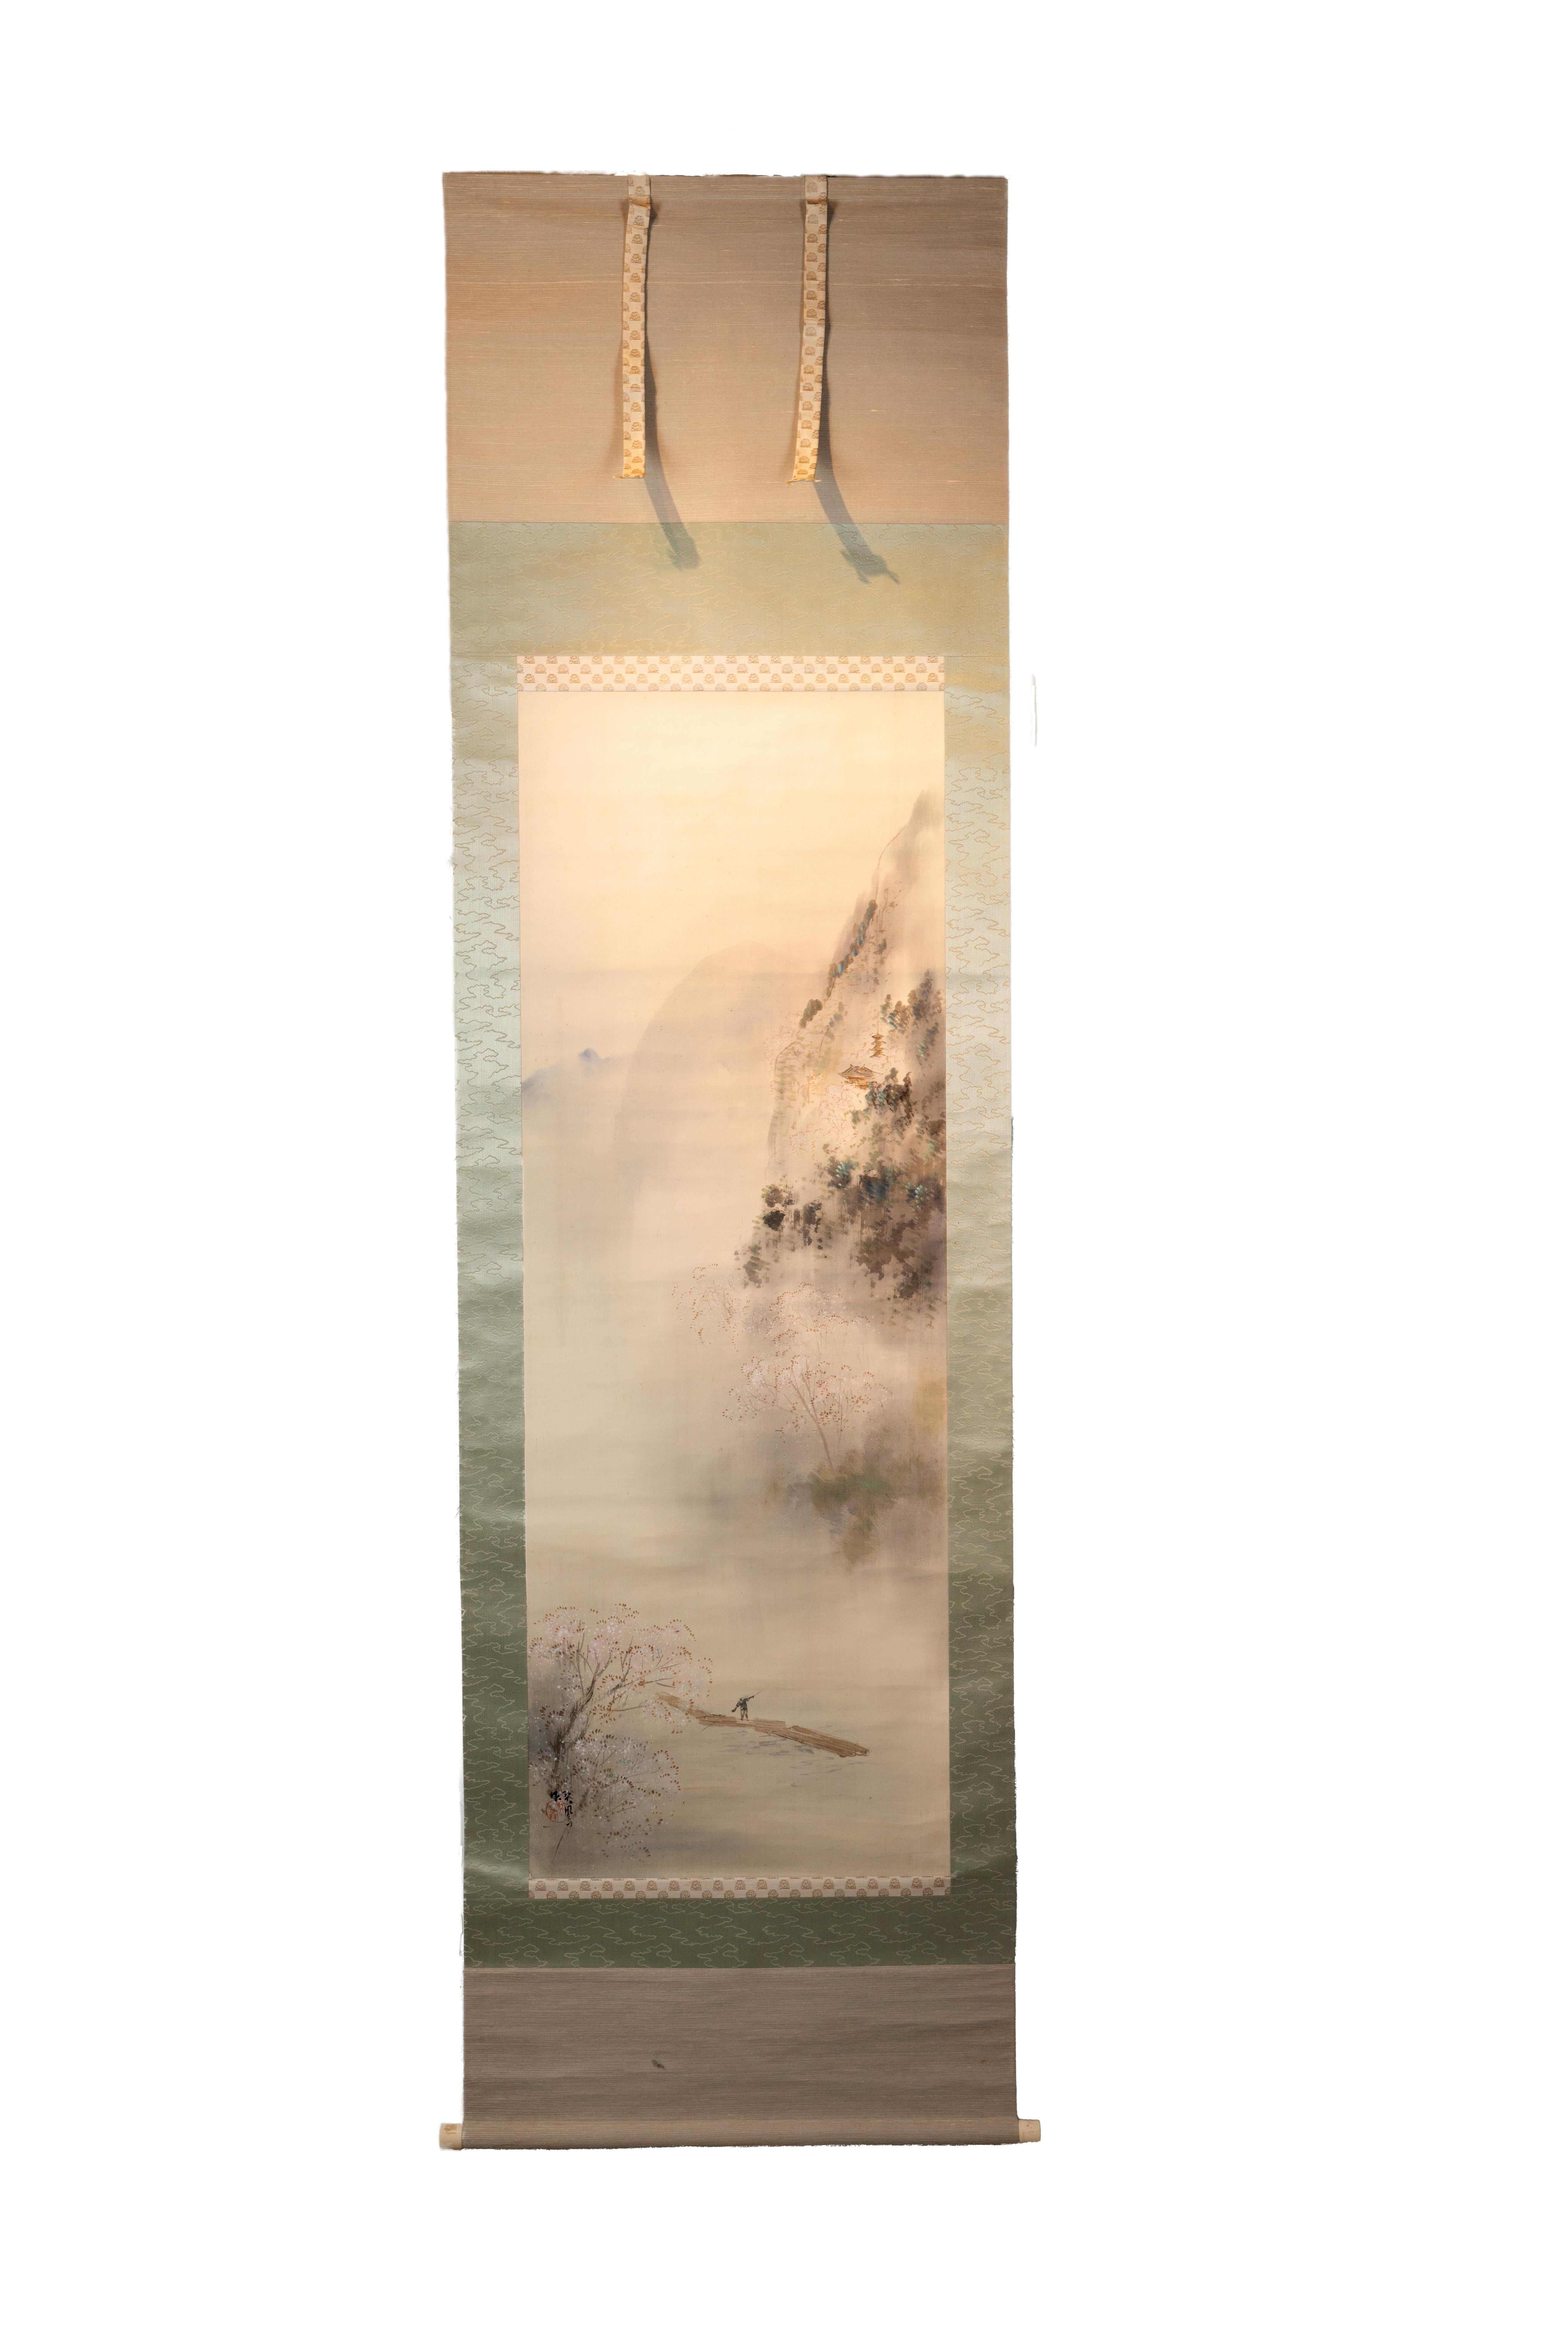 Diese 77" x 22" große antike japanische Schriftrolle zeigt eine ruhige und neblige Landschaftsmalerei auf Seide mit einer Figur in der unteren Hälfte der Komposition. Die Figur steht auf einem Floß oder einer Brücke über einem Gewässer und hält ein